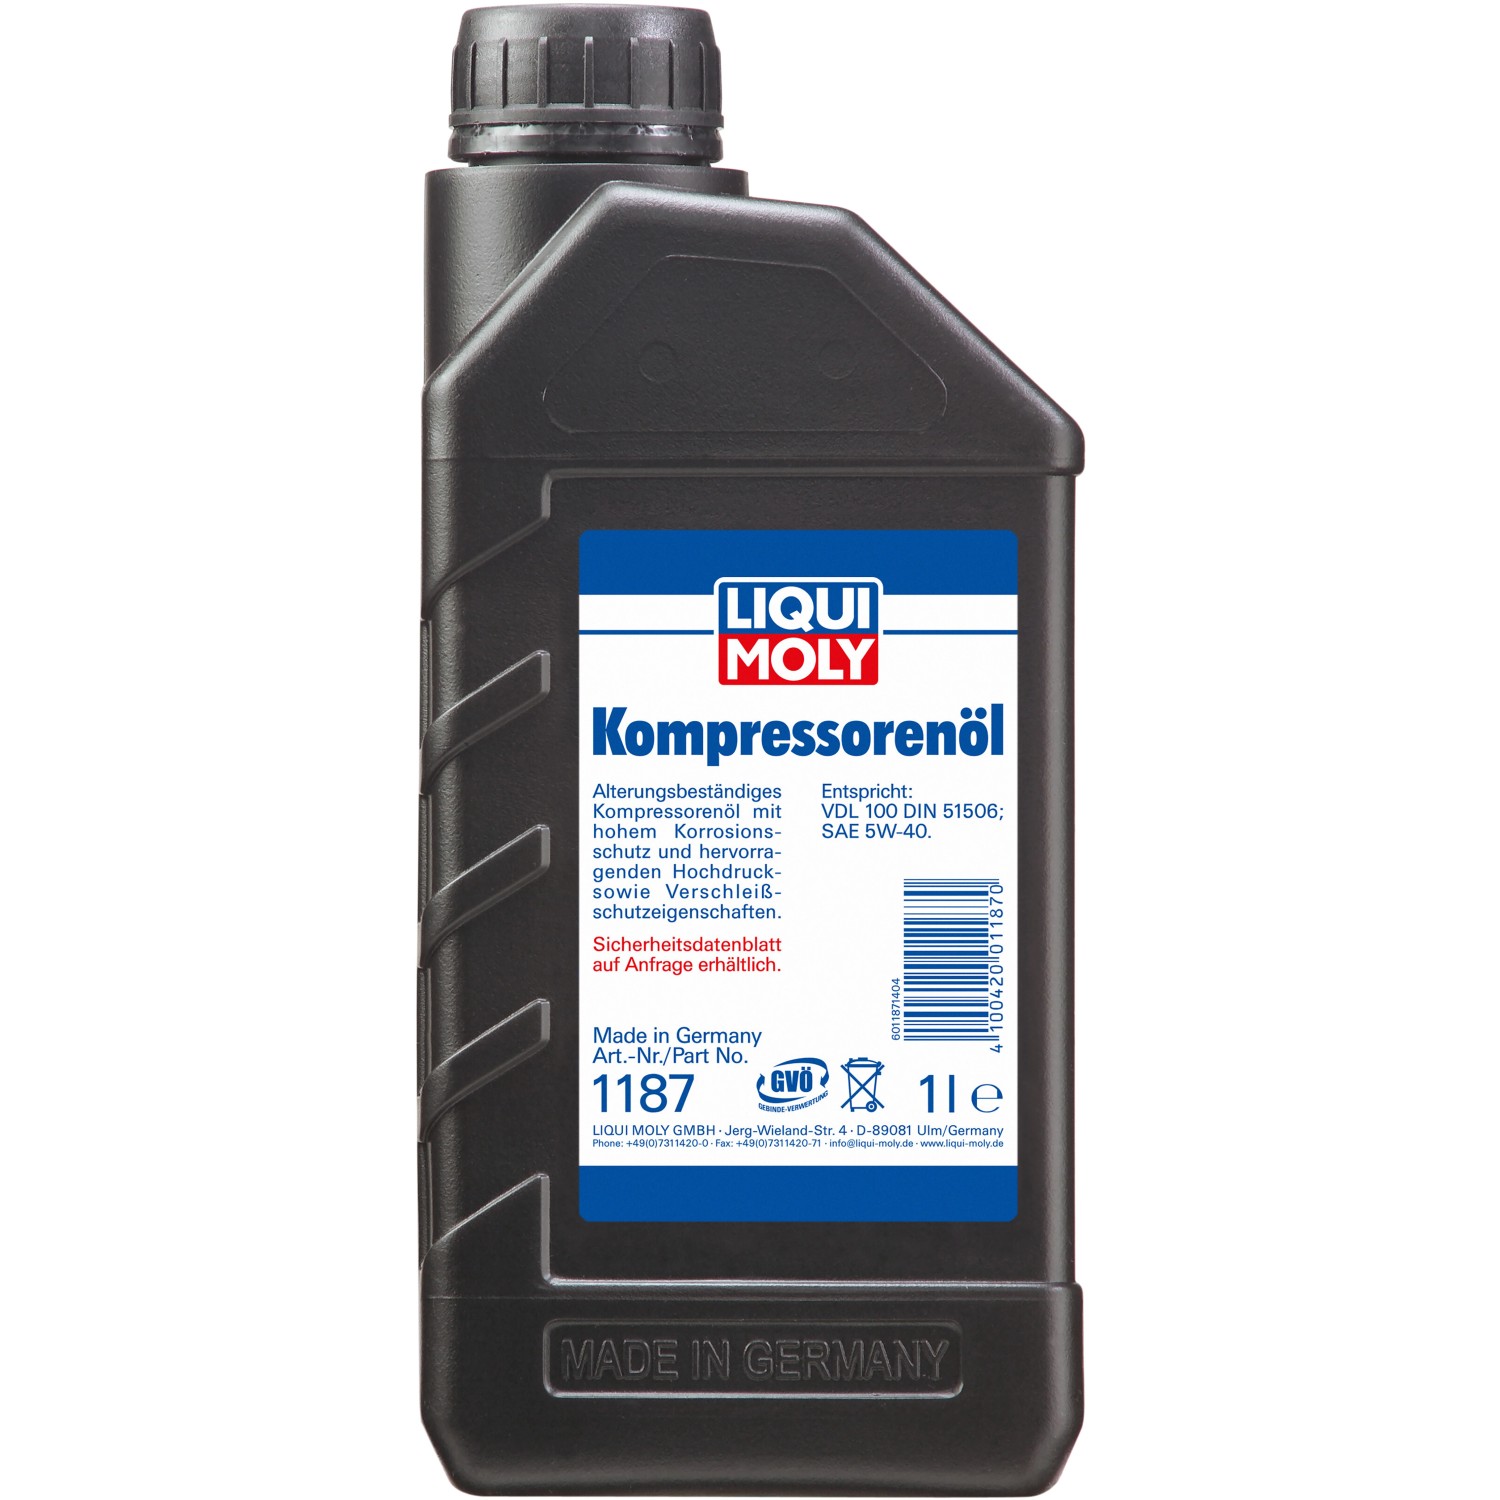 Liqui Moly Kompressorenöl 100 1 l kaufen bei OBI